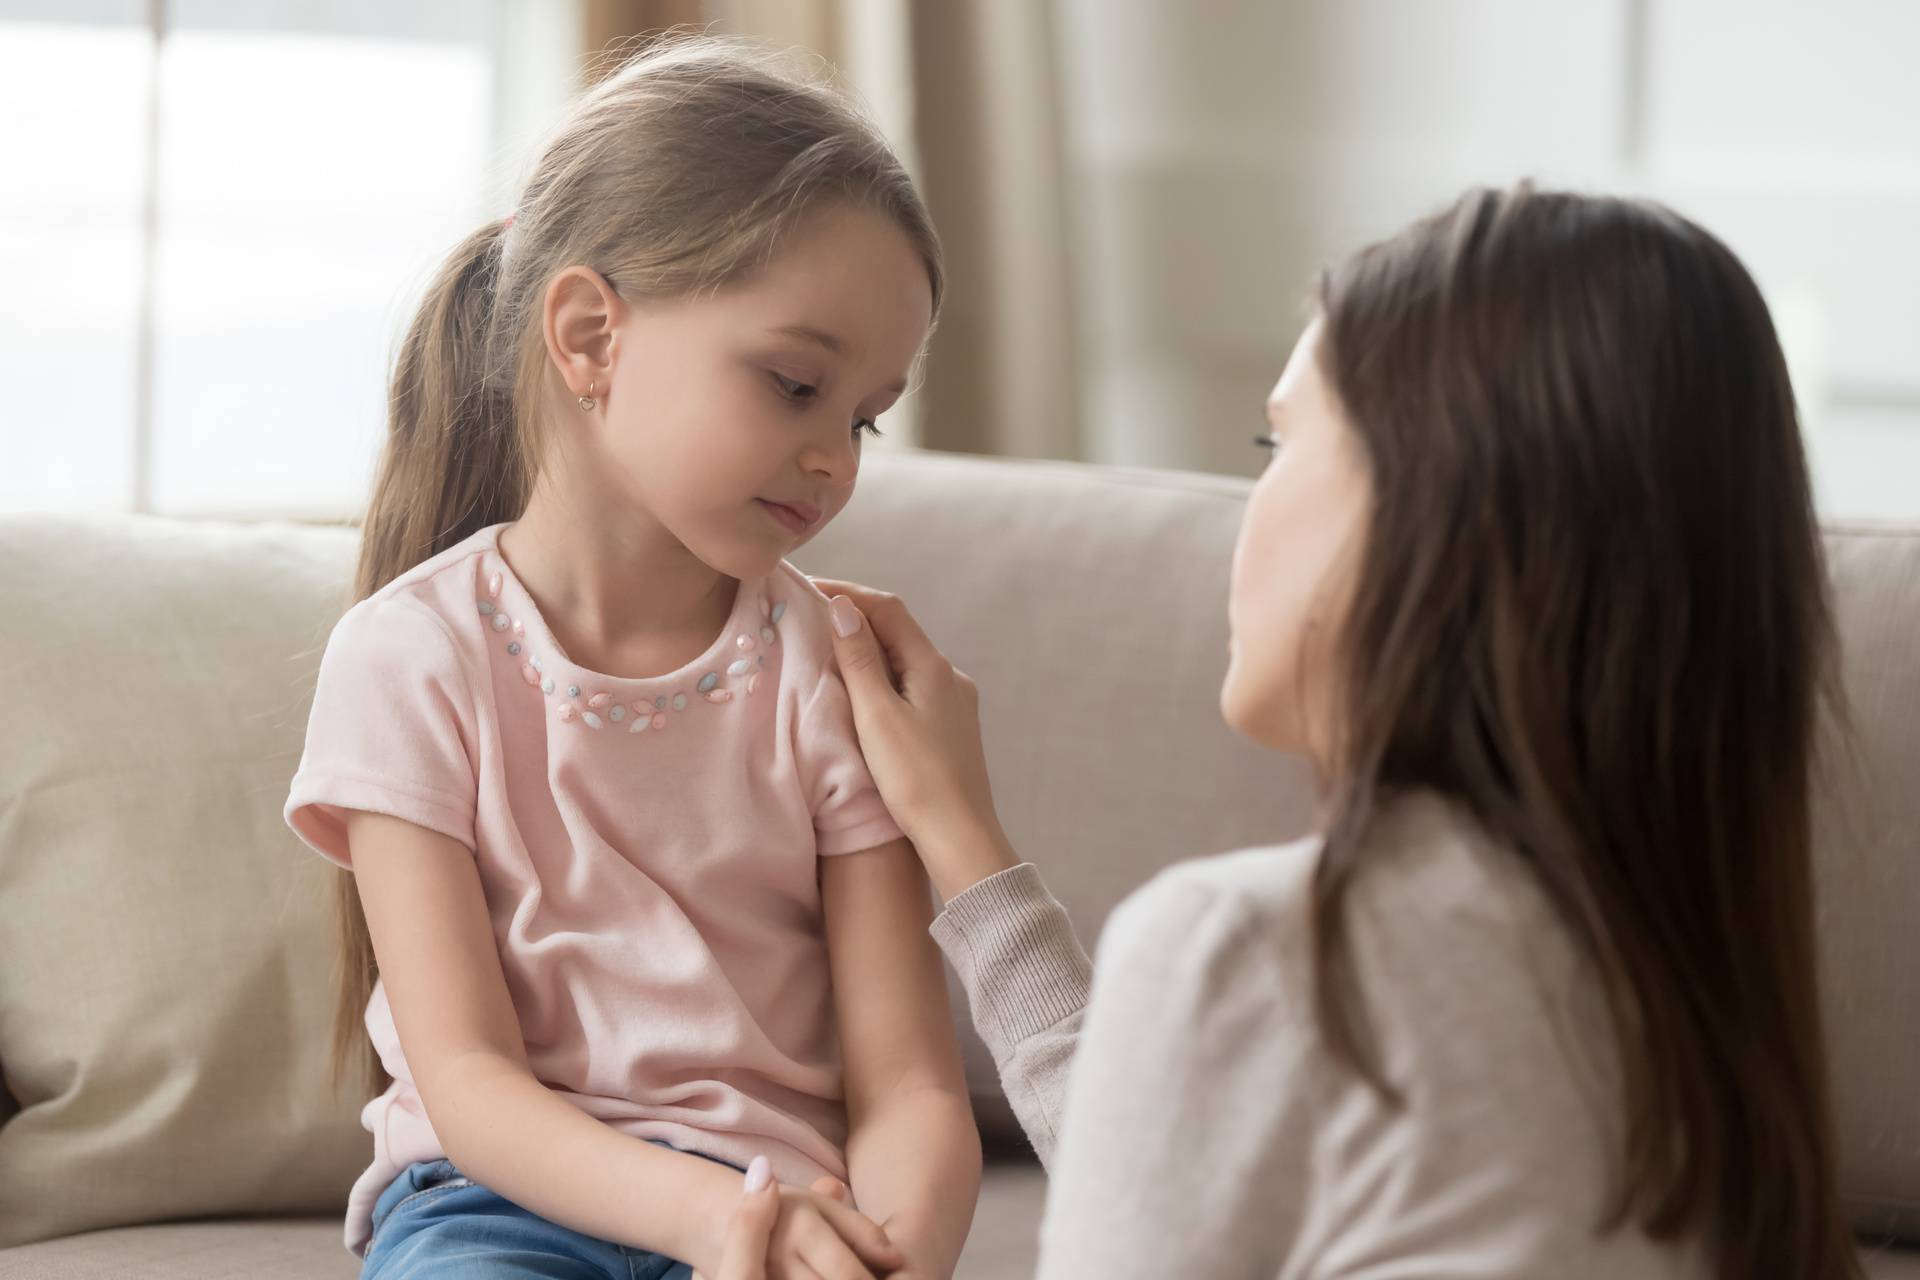 Pet načina da razgovarate s djecom da vas ona uistinu čuju